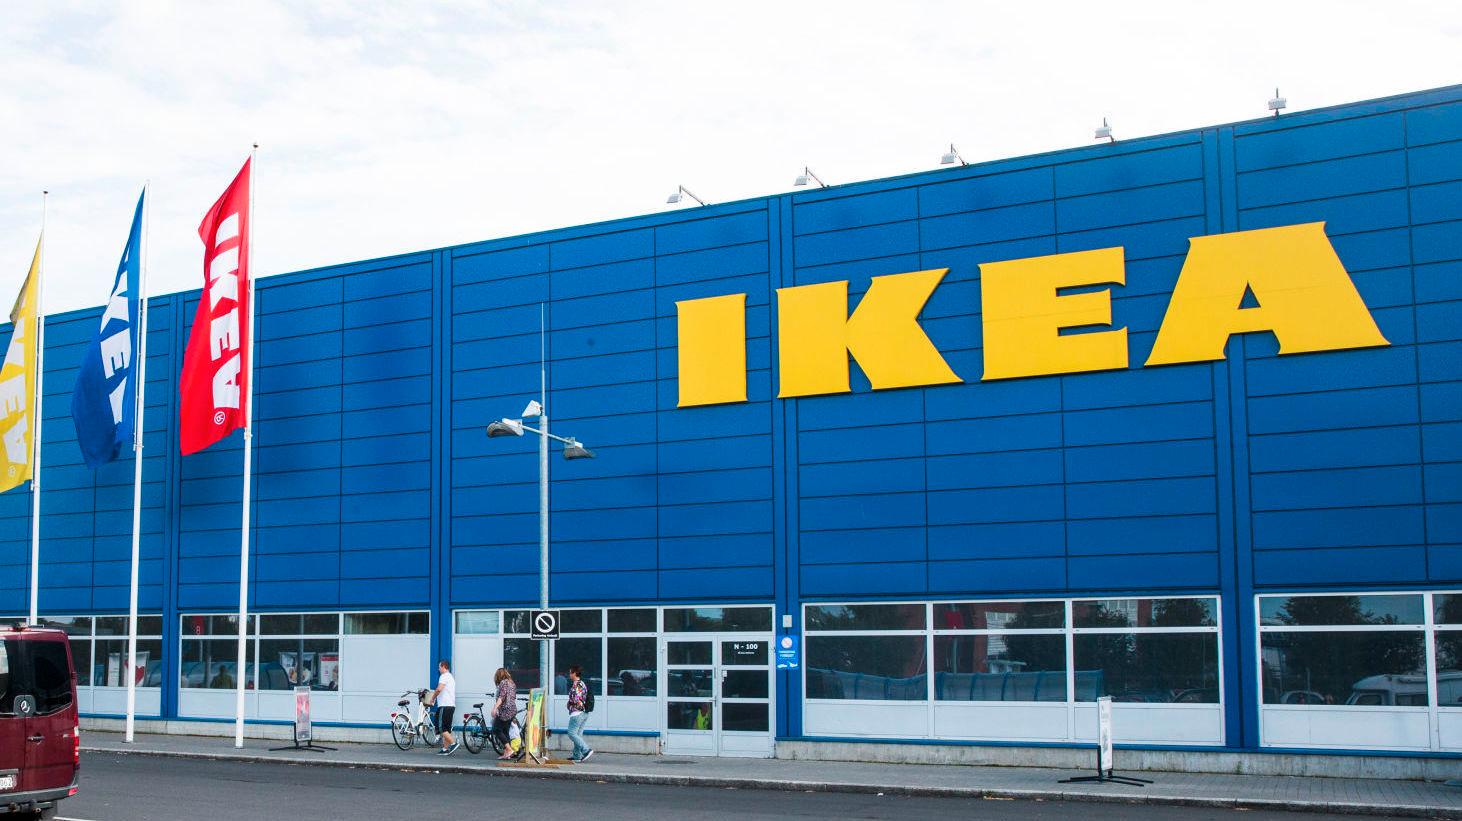 VIL FÅ NED MATSVINNET: IKEA skal halvere matsvinnet med halvparten, blant annet ved å notere ned alt som kastes. Foto: Frode Hansen/VG